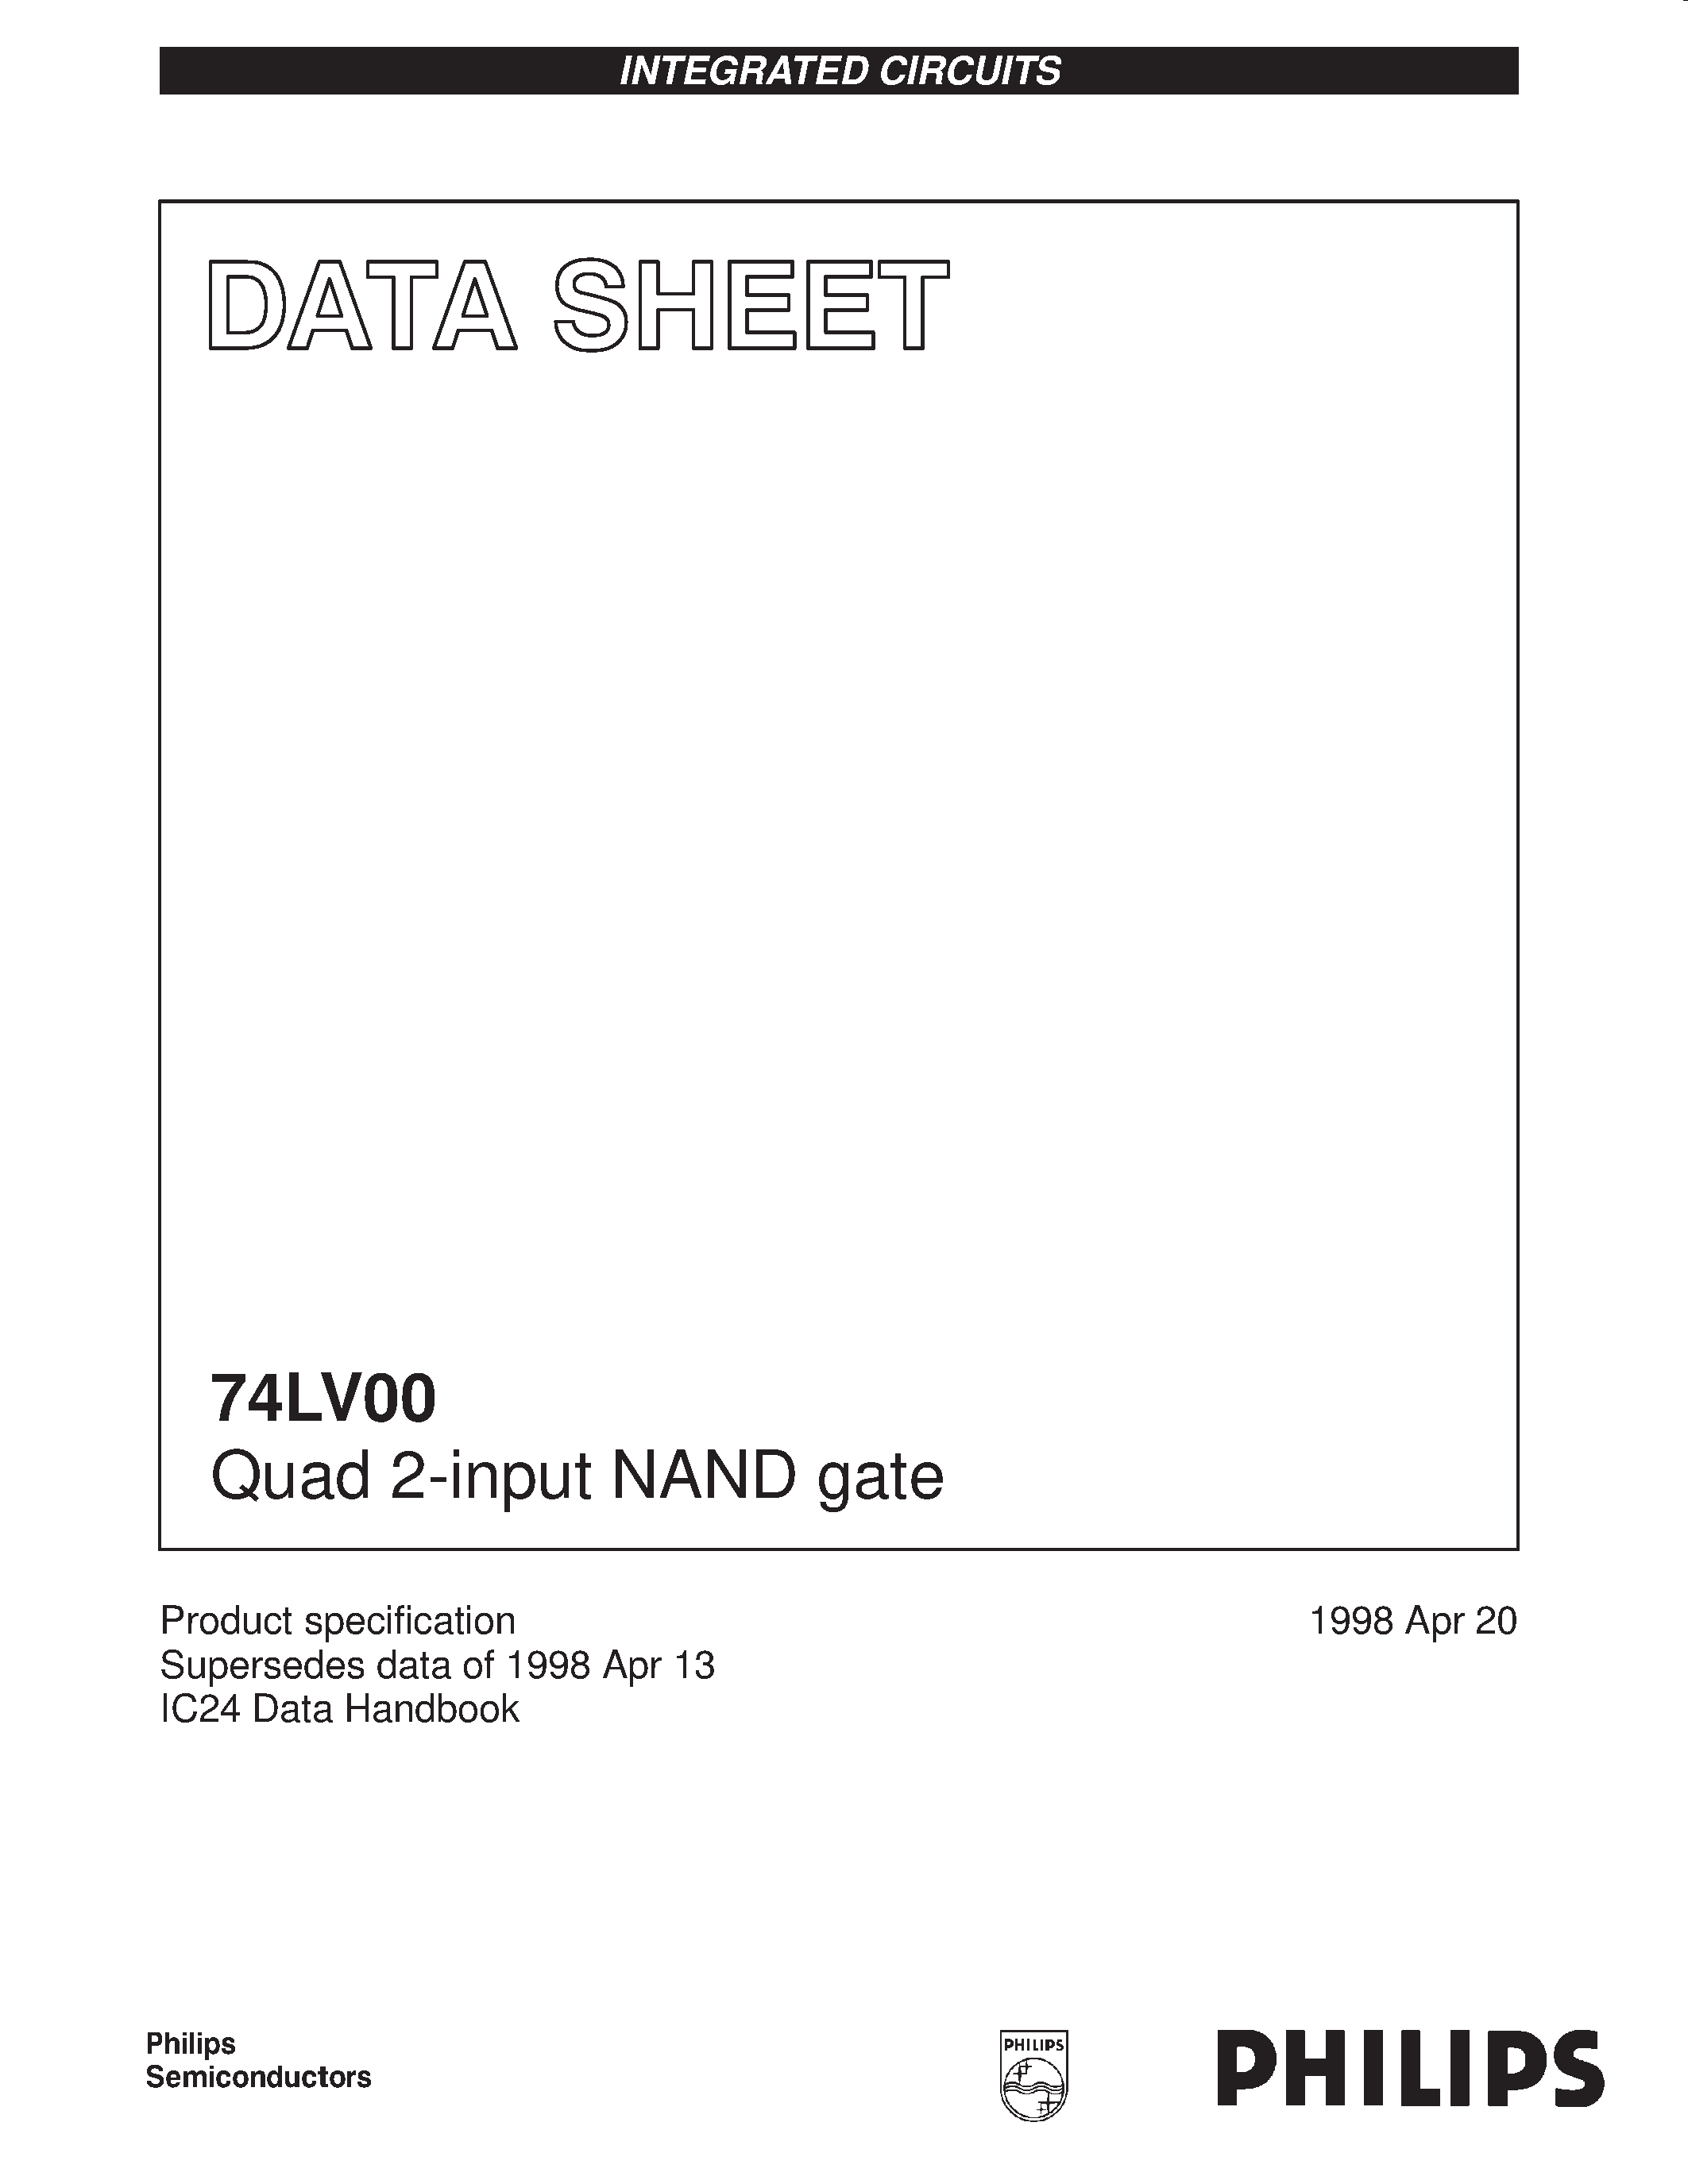 Даташит 74LV00 - Quad 2-input NAND gate страница 1